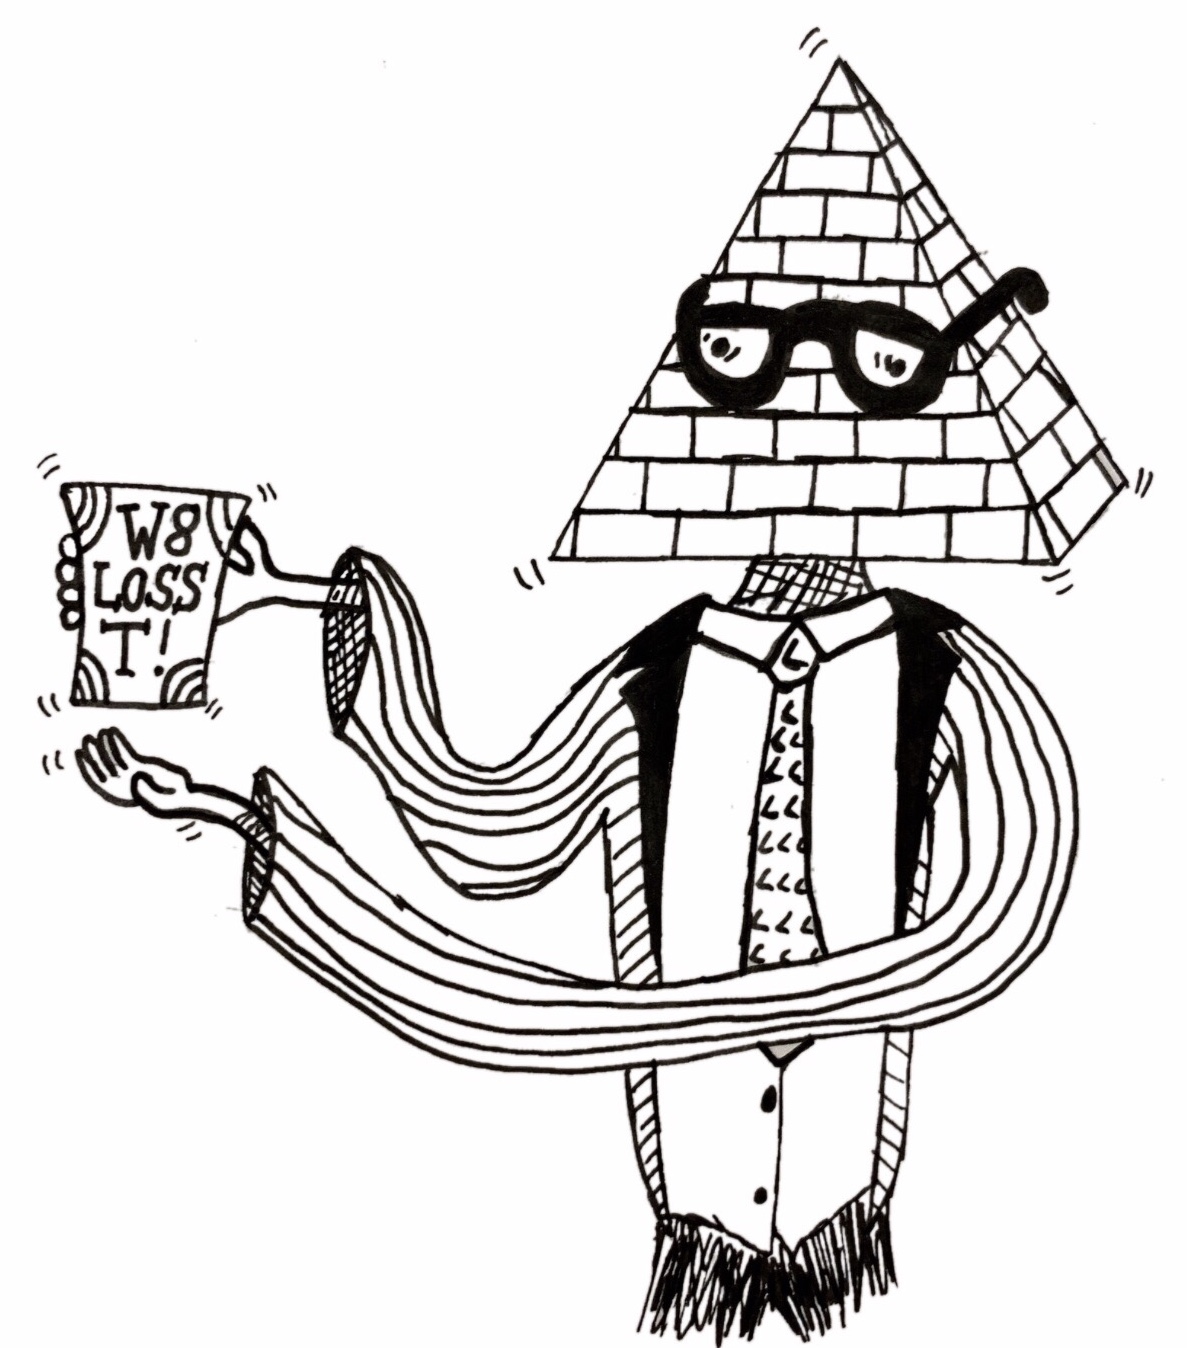 Detox Teas & Pyramid Schemes – Buzzsaw Magazine